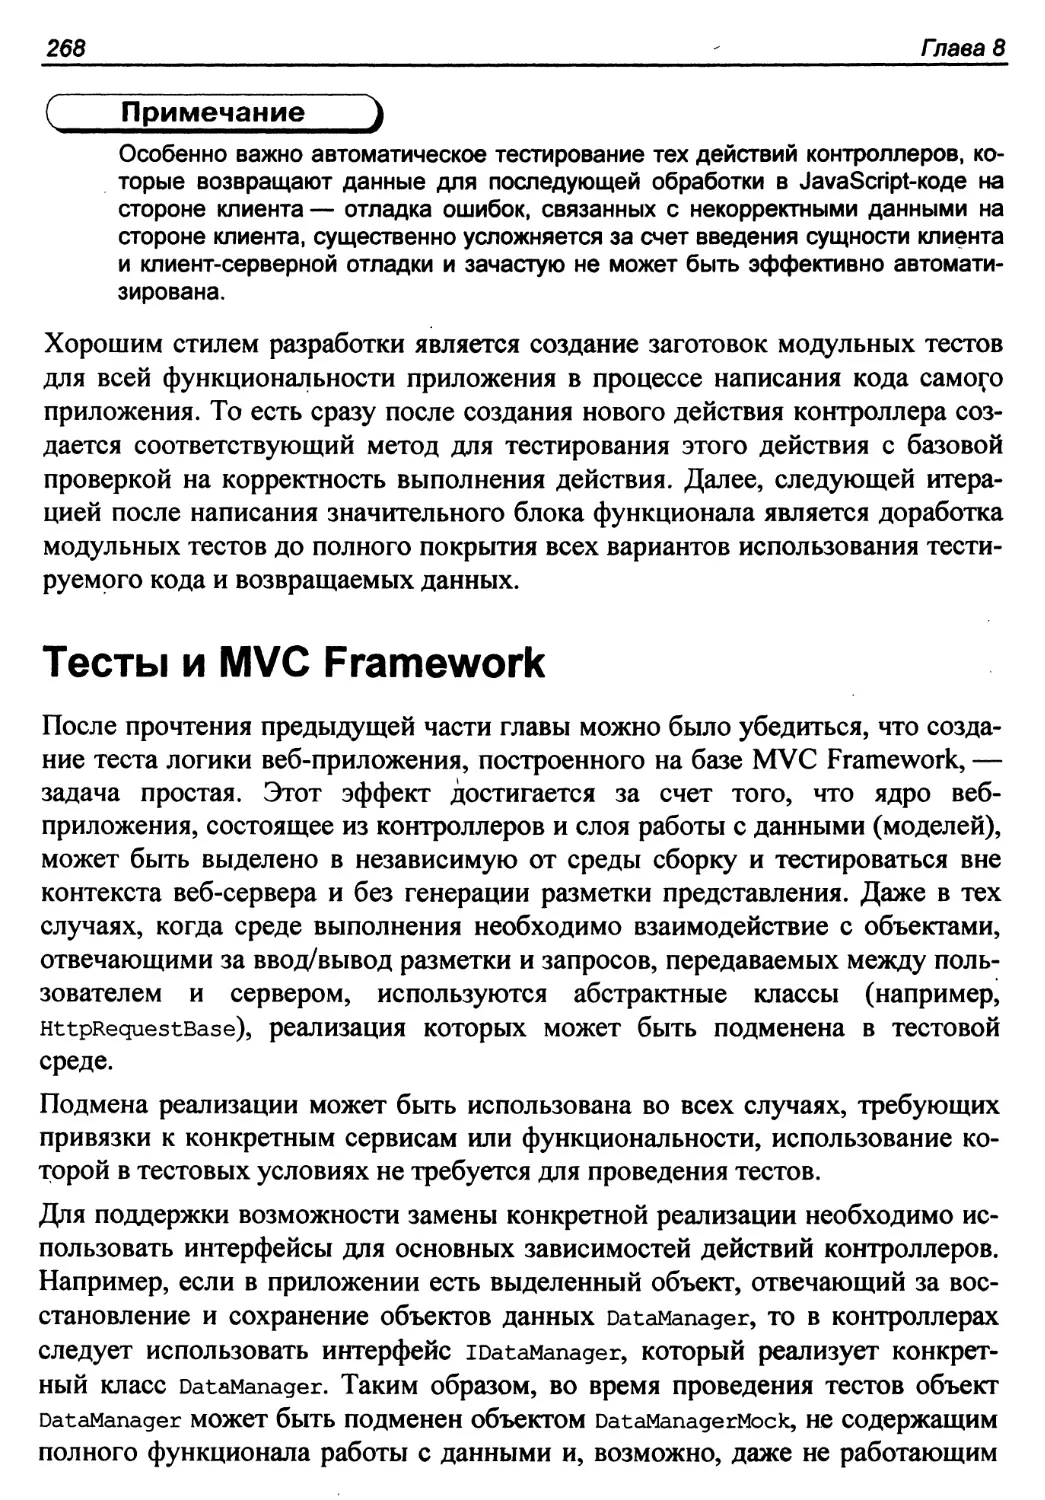 Тесты и MVC Framework